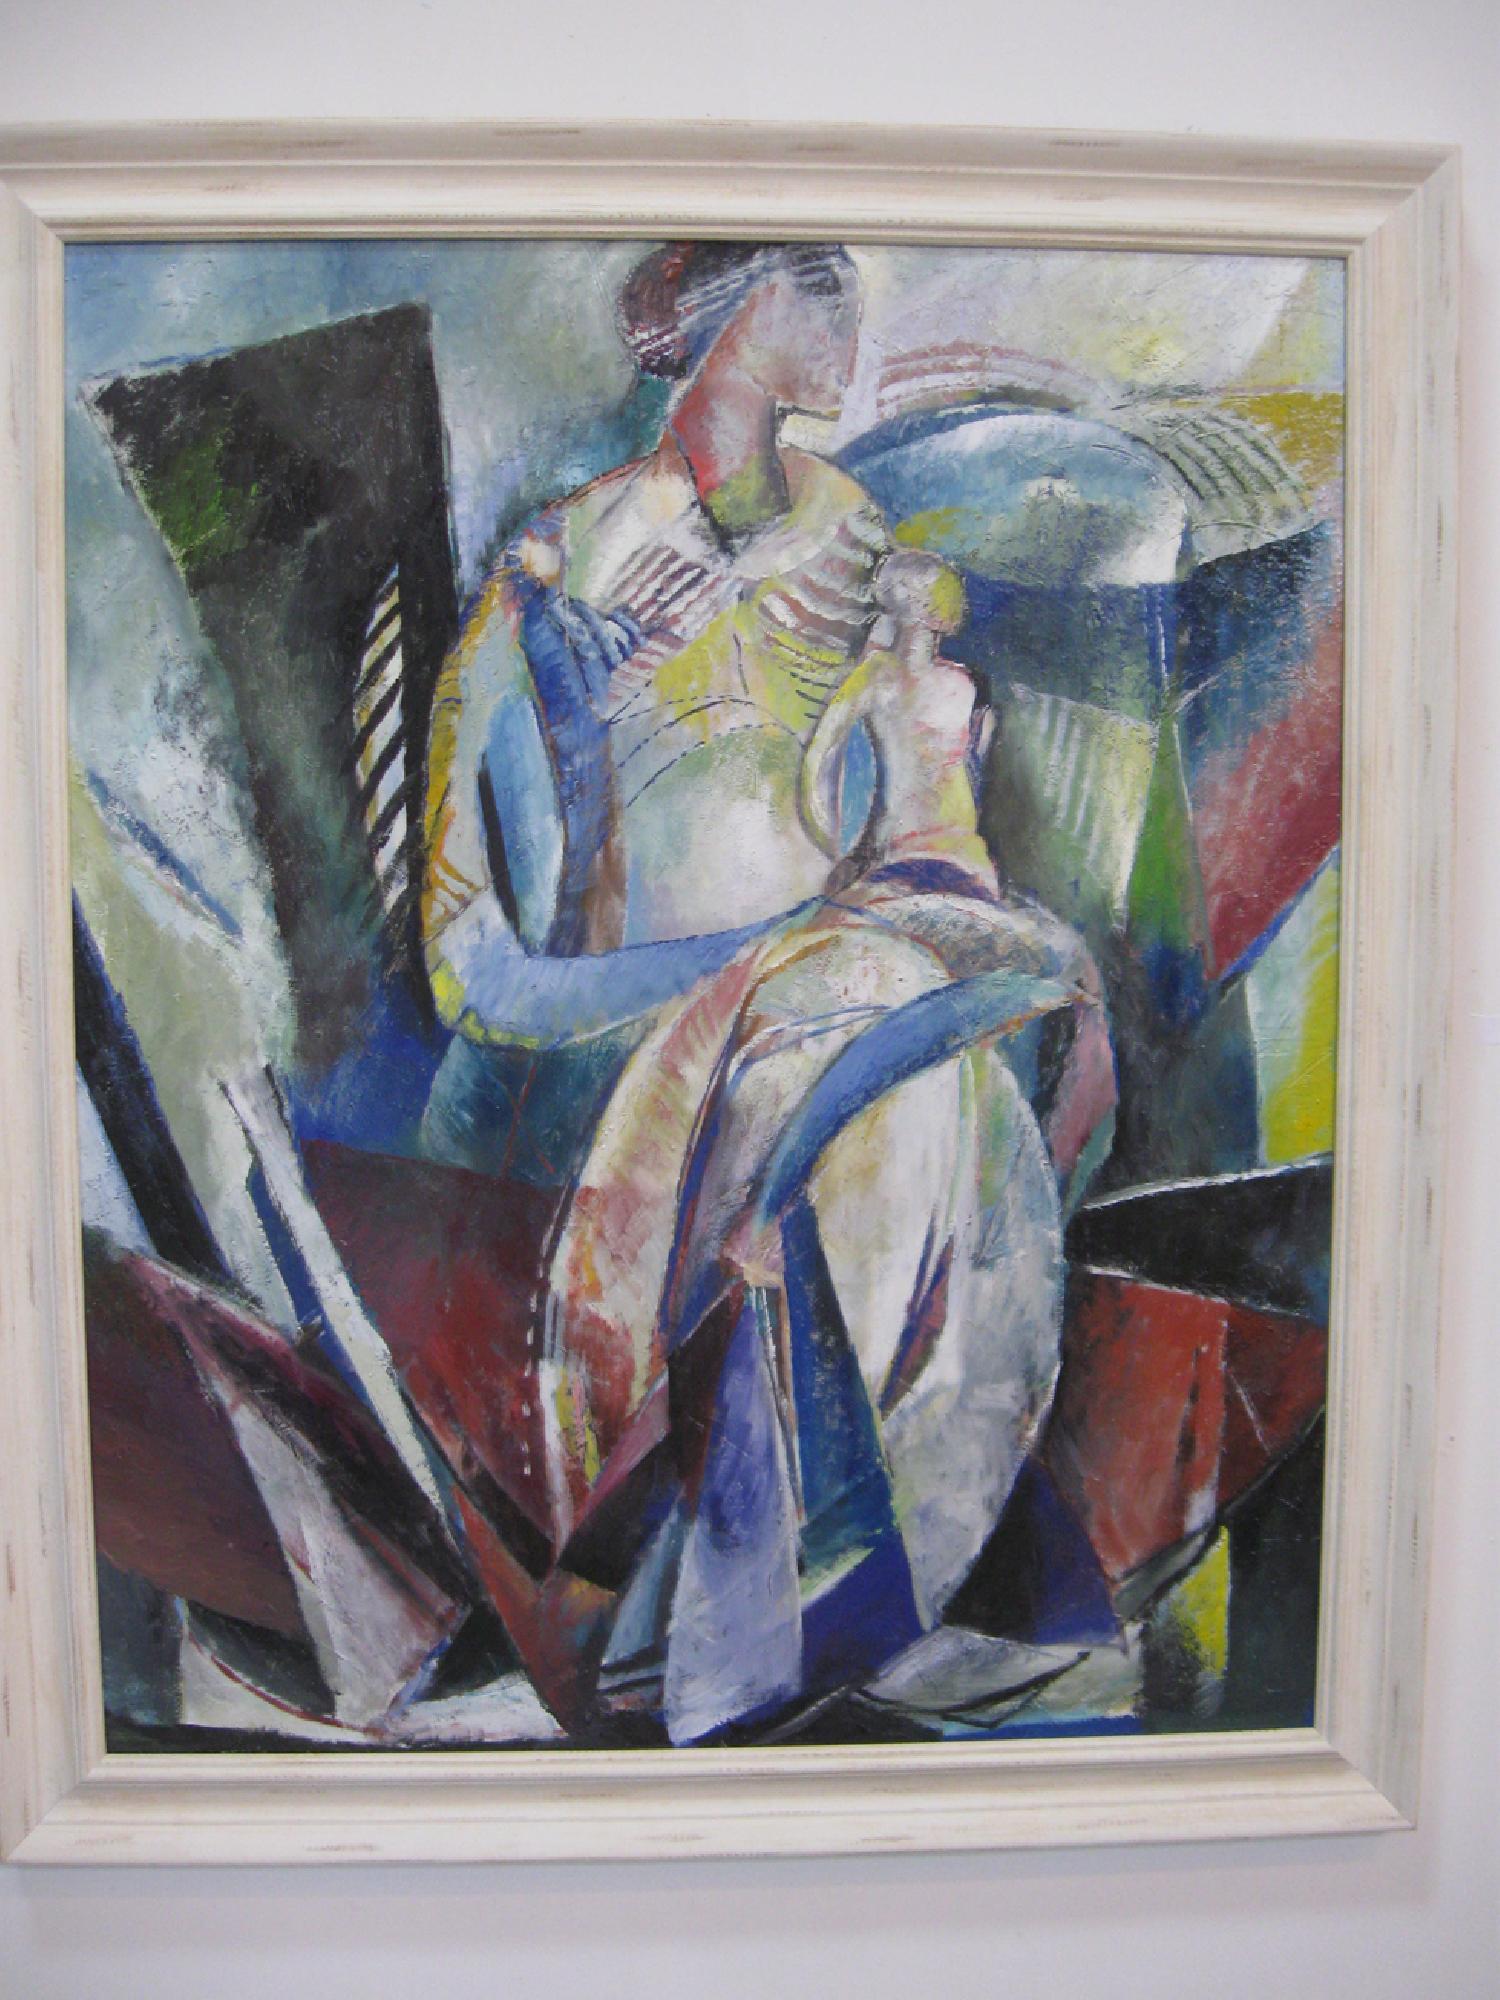 Leonard Lorenz: Mutter mit Kind
2020
120 × 100 cm
Oil on canvas